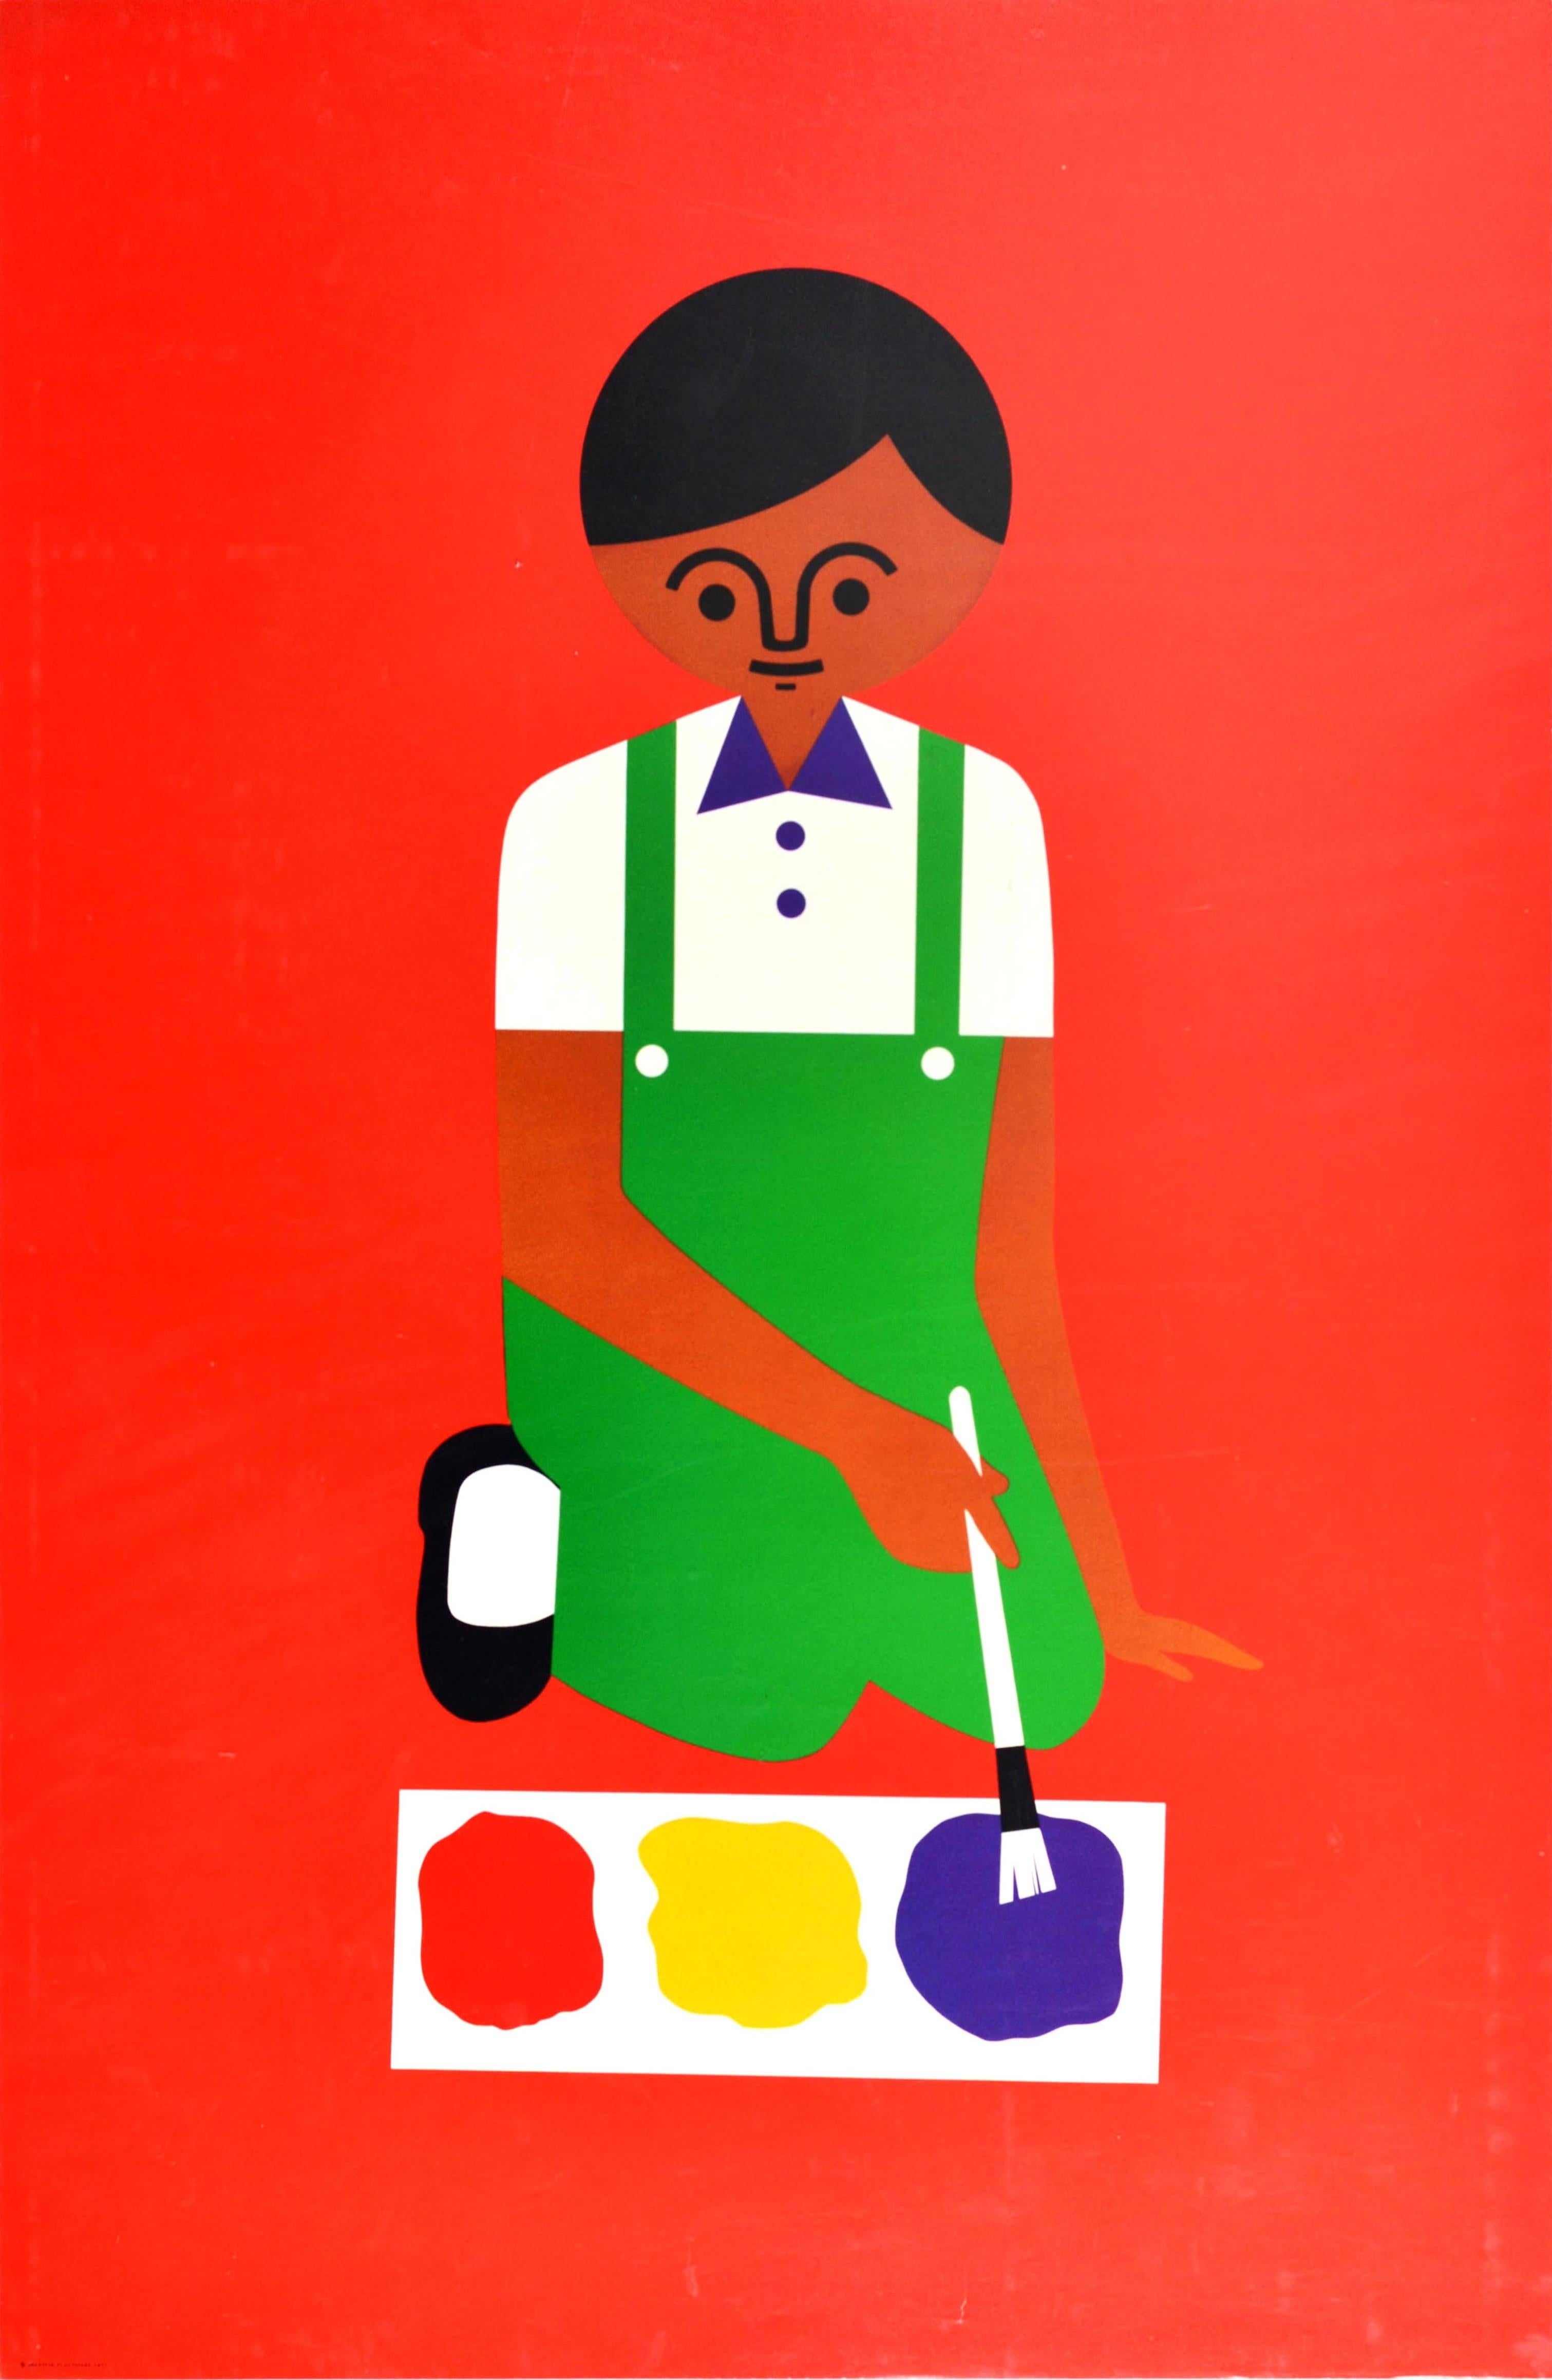 Original-Werbeplakat für das pädagogische Spielzeuggeschäft Creative Playthings in Manhattan, New York, mit einem lustigen und farbenfrohen grafischen Entwurf des südafrikanischen Spielzeugmachers und Illustrators Fredun Shapur (geb. 1929), der ein